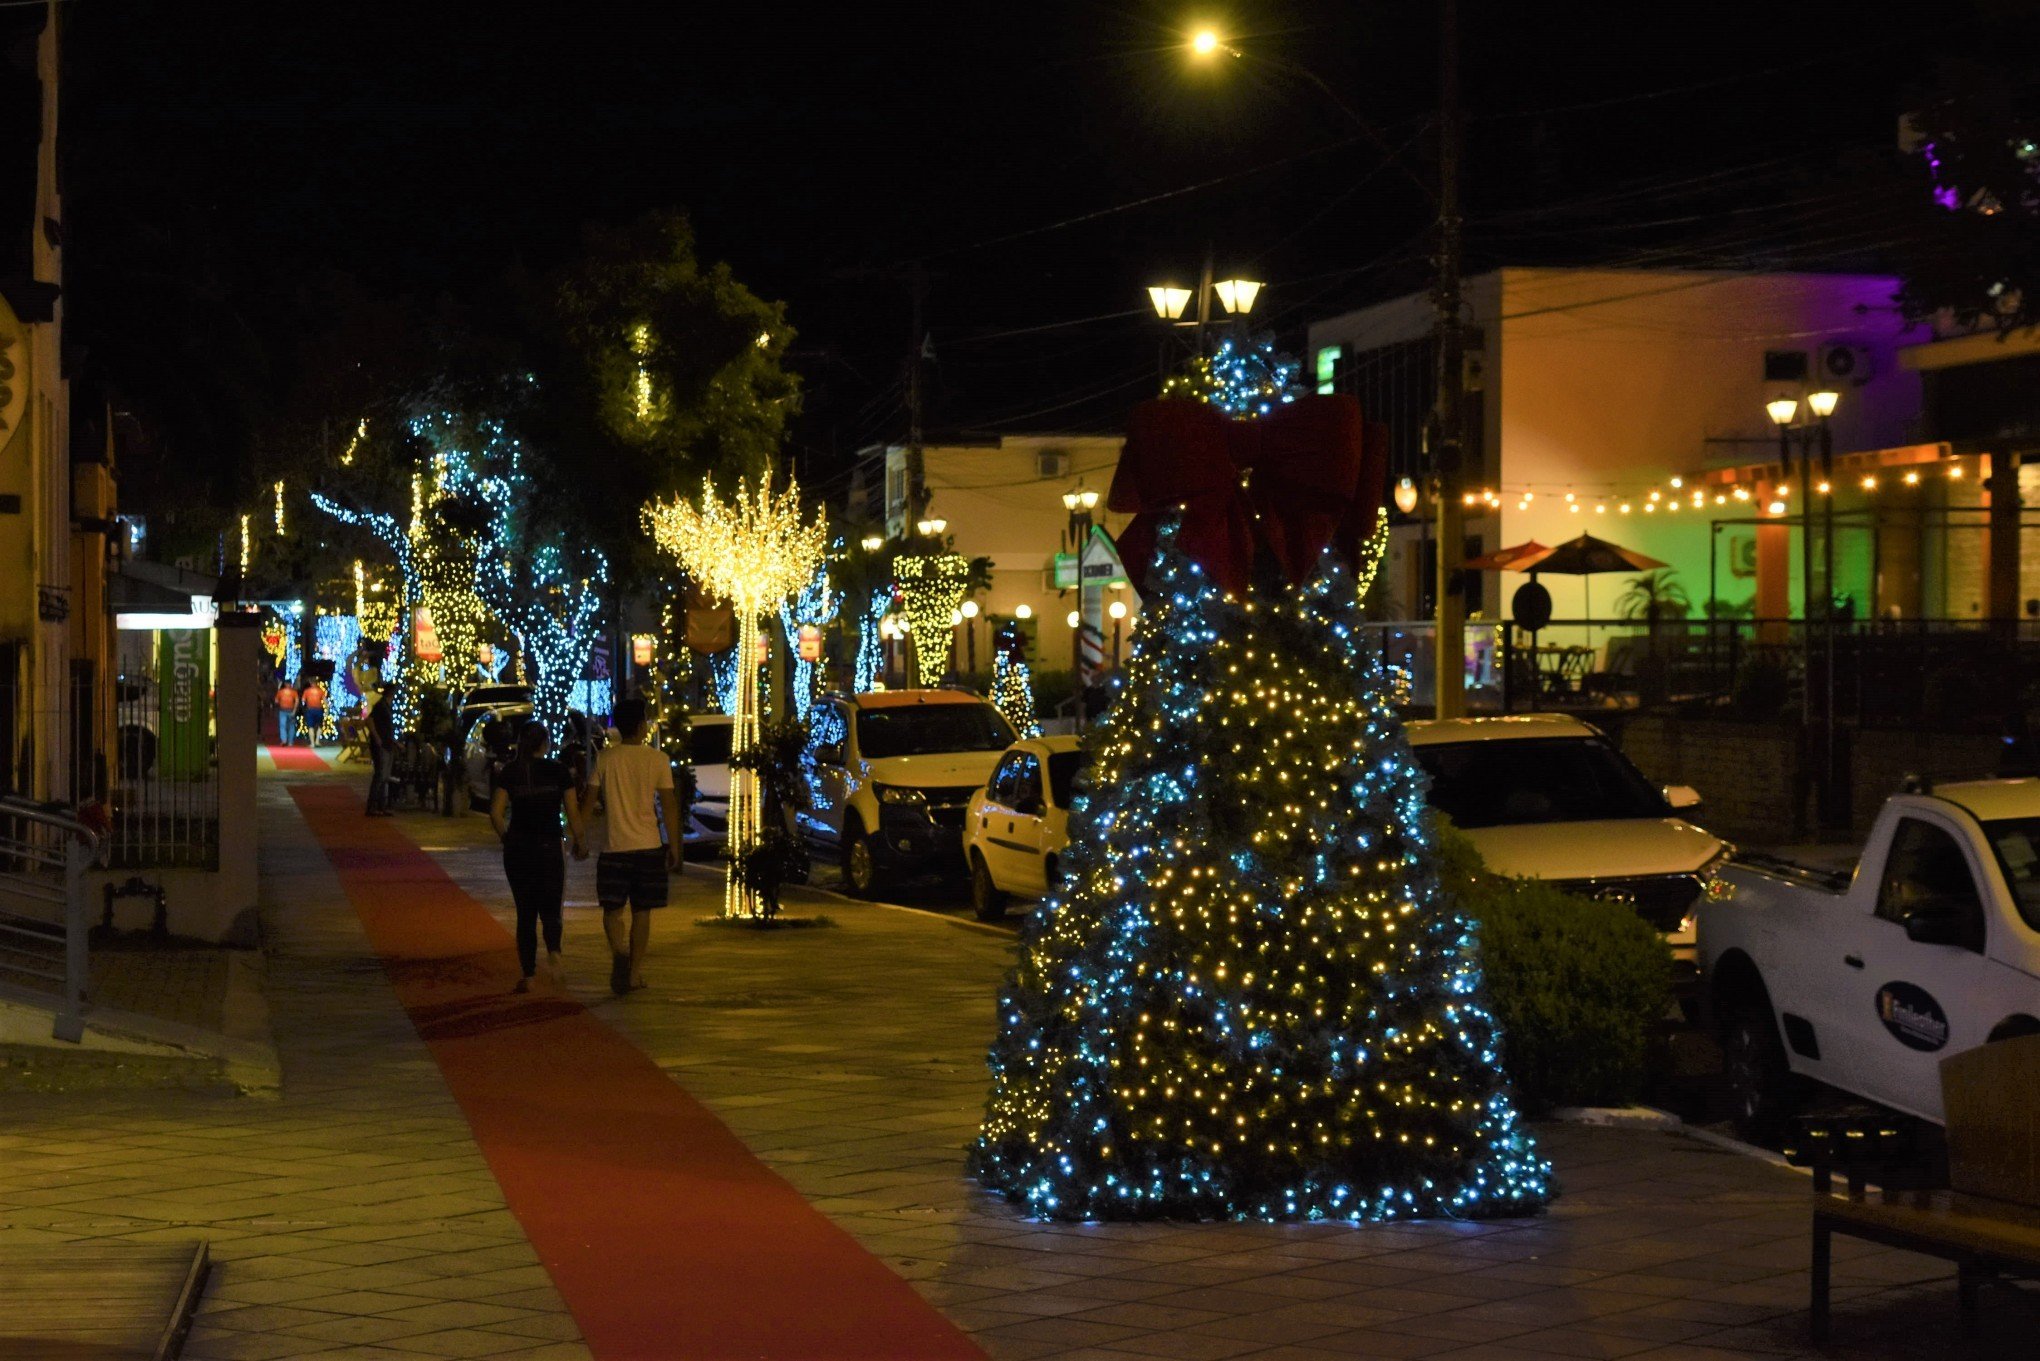 Cidades da região vivem clima de Natal com decoração e programação especial  - Região - Diário de Canoas